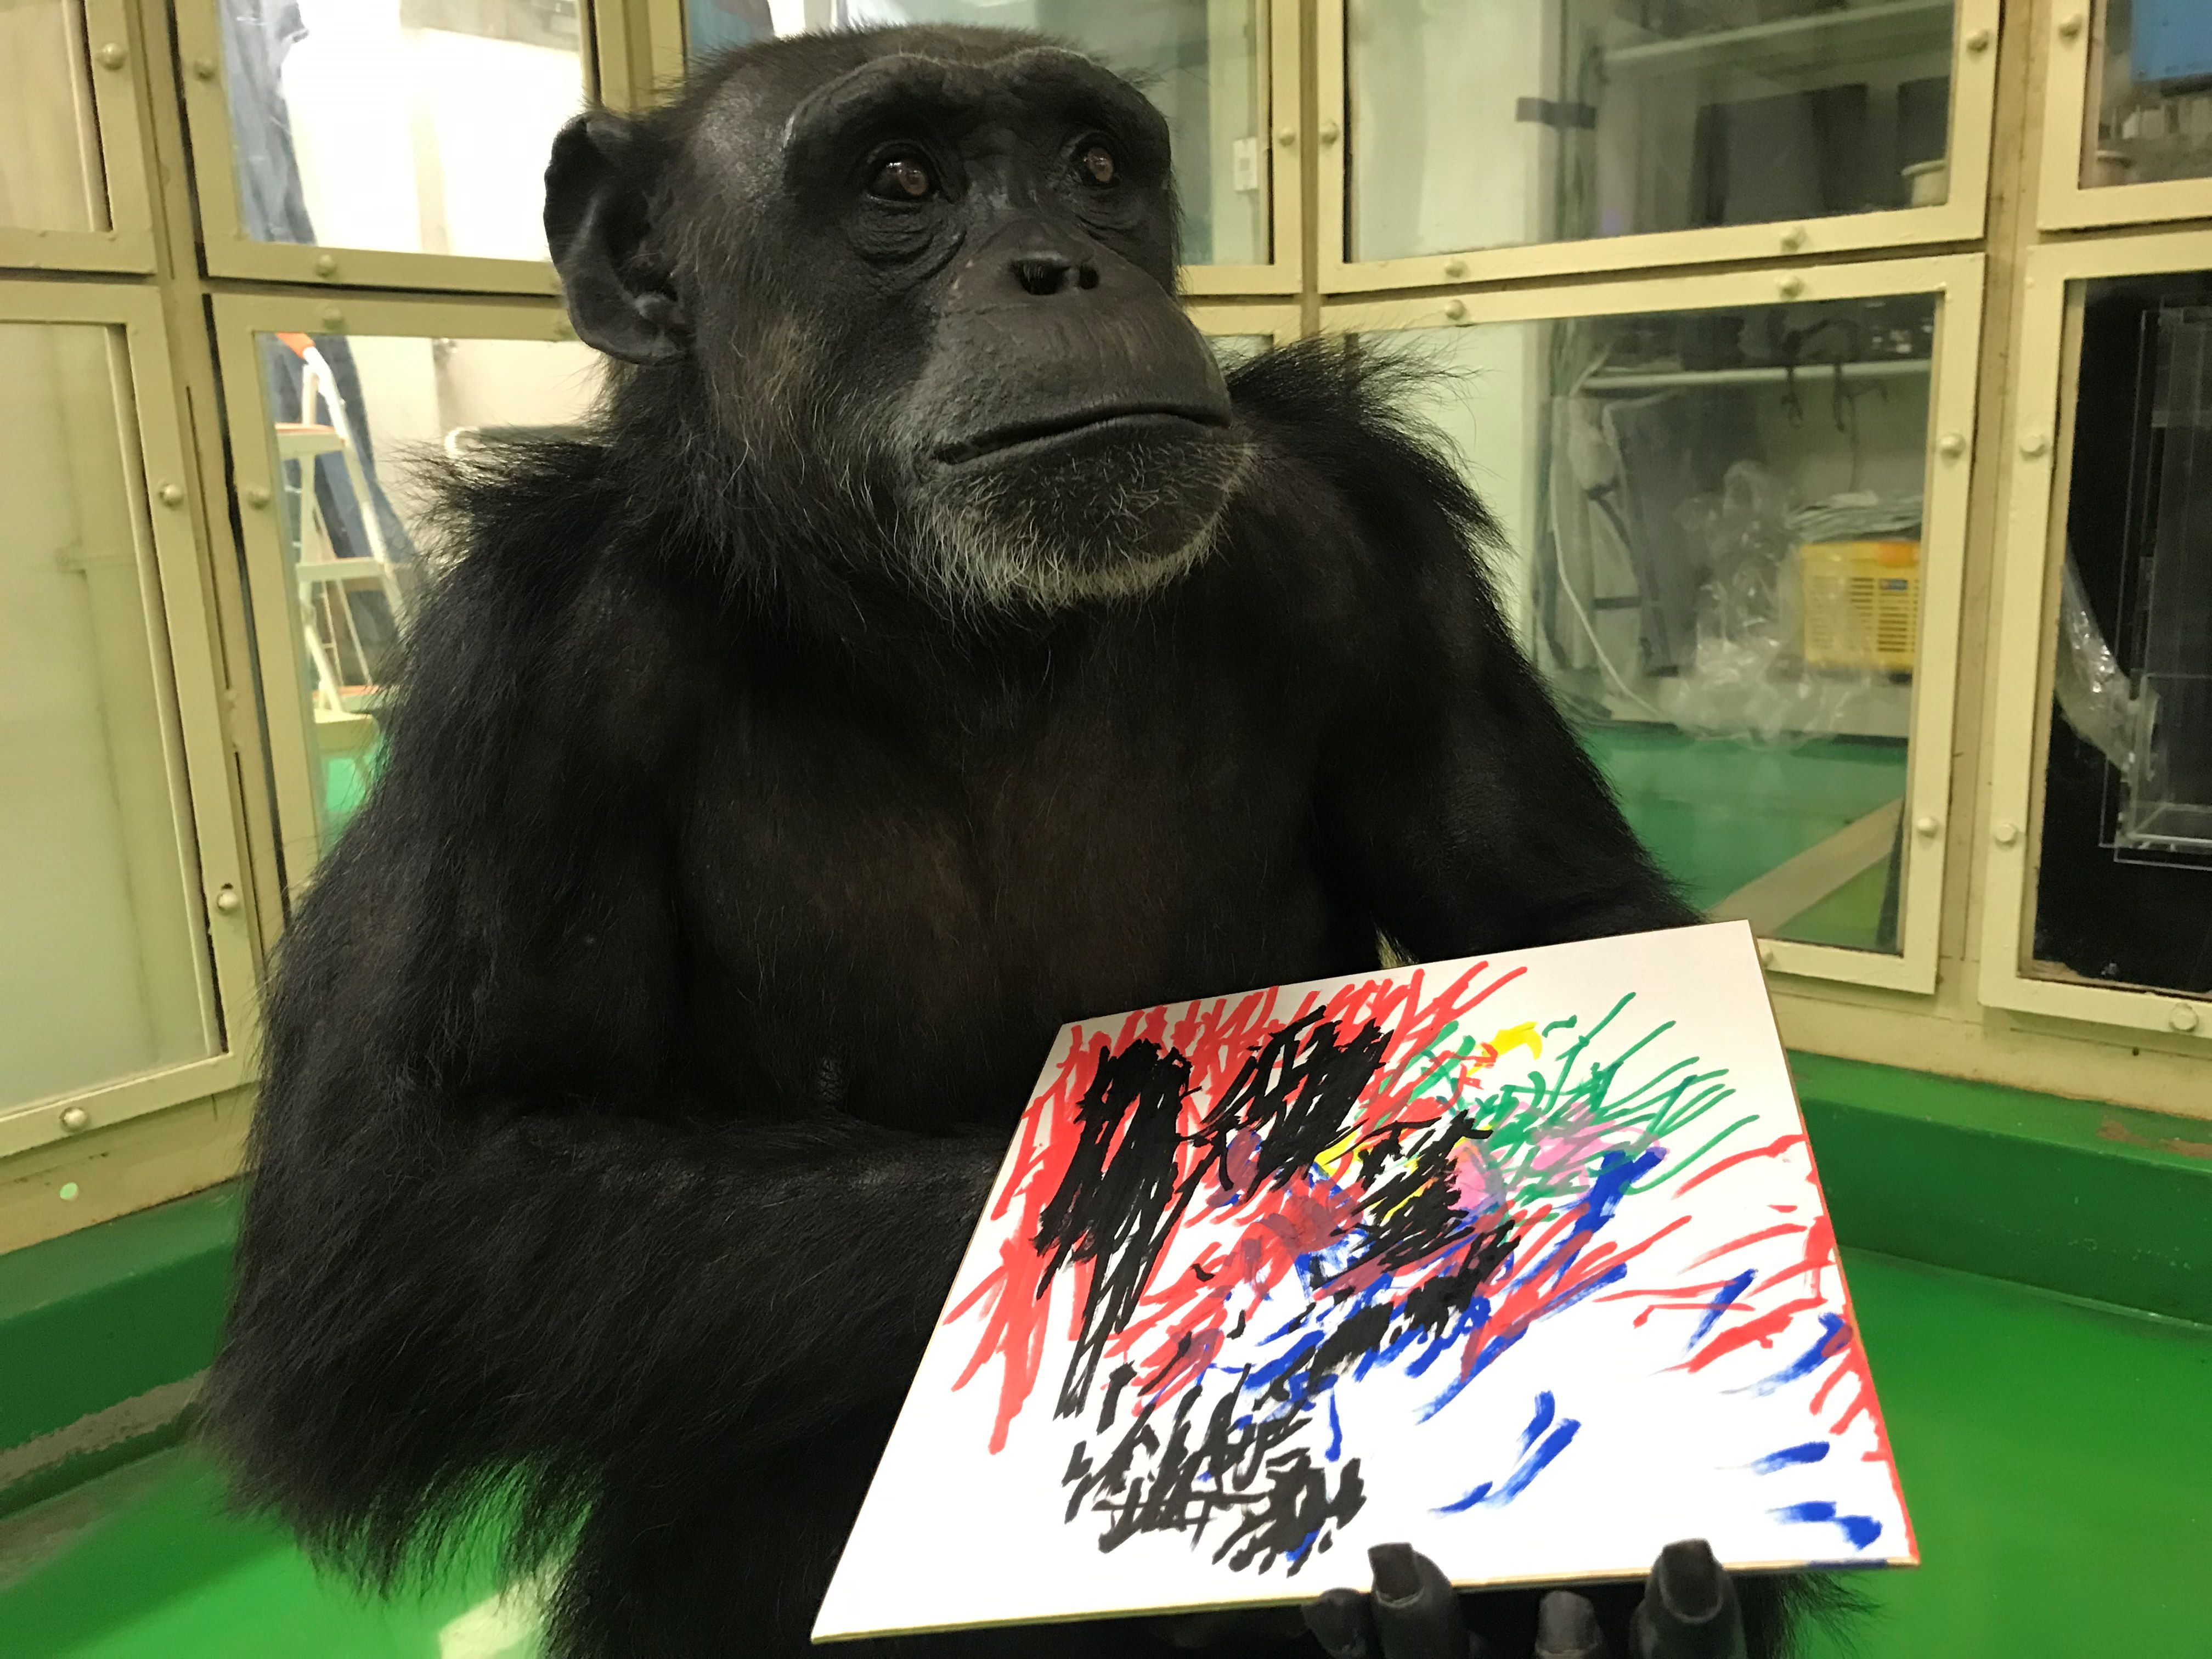 Pan, femelle chimpanzé, est une des «stars» de l’université de Kyoto. Le primatologue Cédric Sueur a étudié ses dessins et ceux de d'autres singes. Il livre son enseignement dans un livre paru récemment, «Les Péripéties d’un primatologue». Photo publiée avec l'autorisation de Tetsuro Matsuzawa